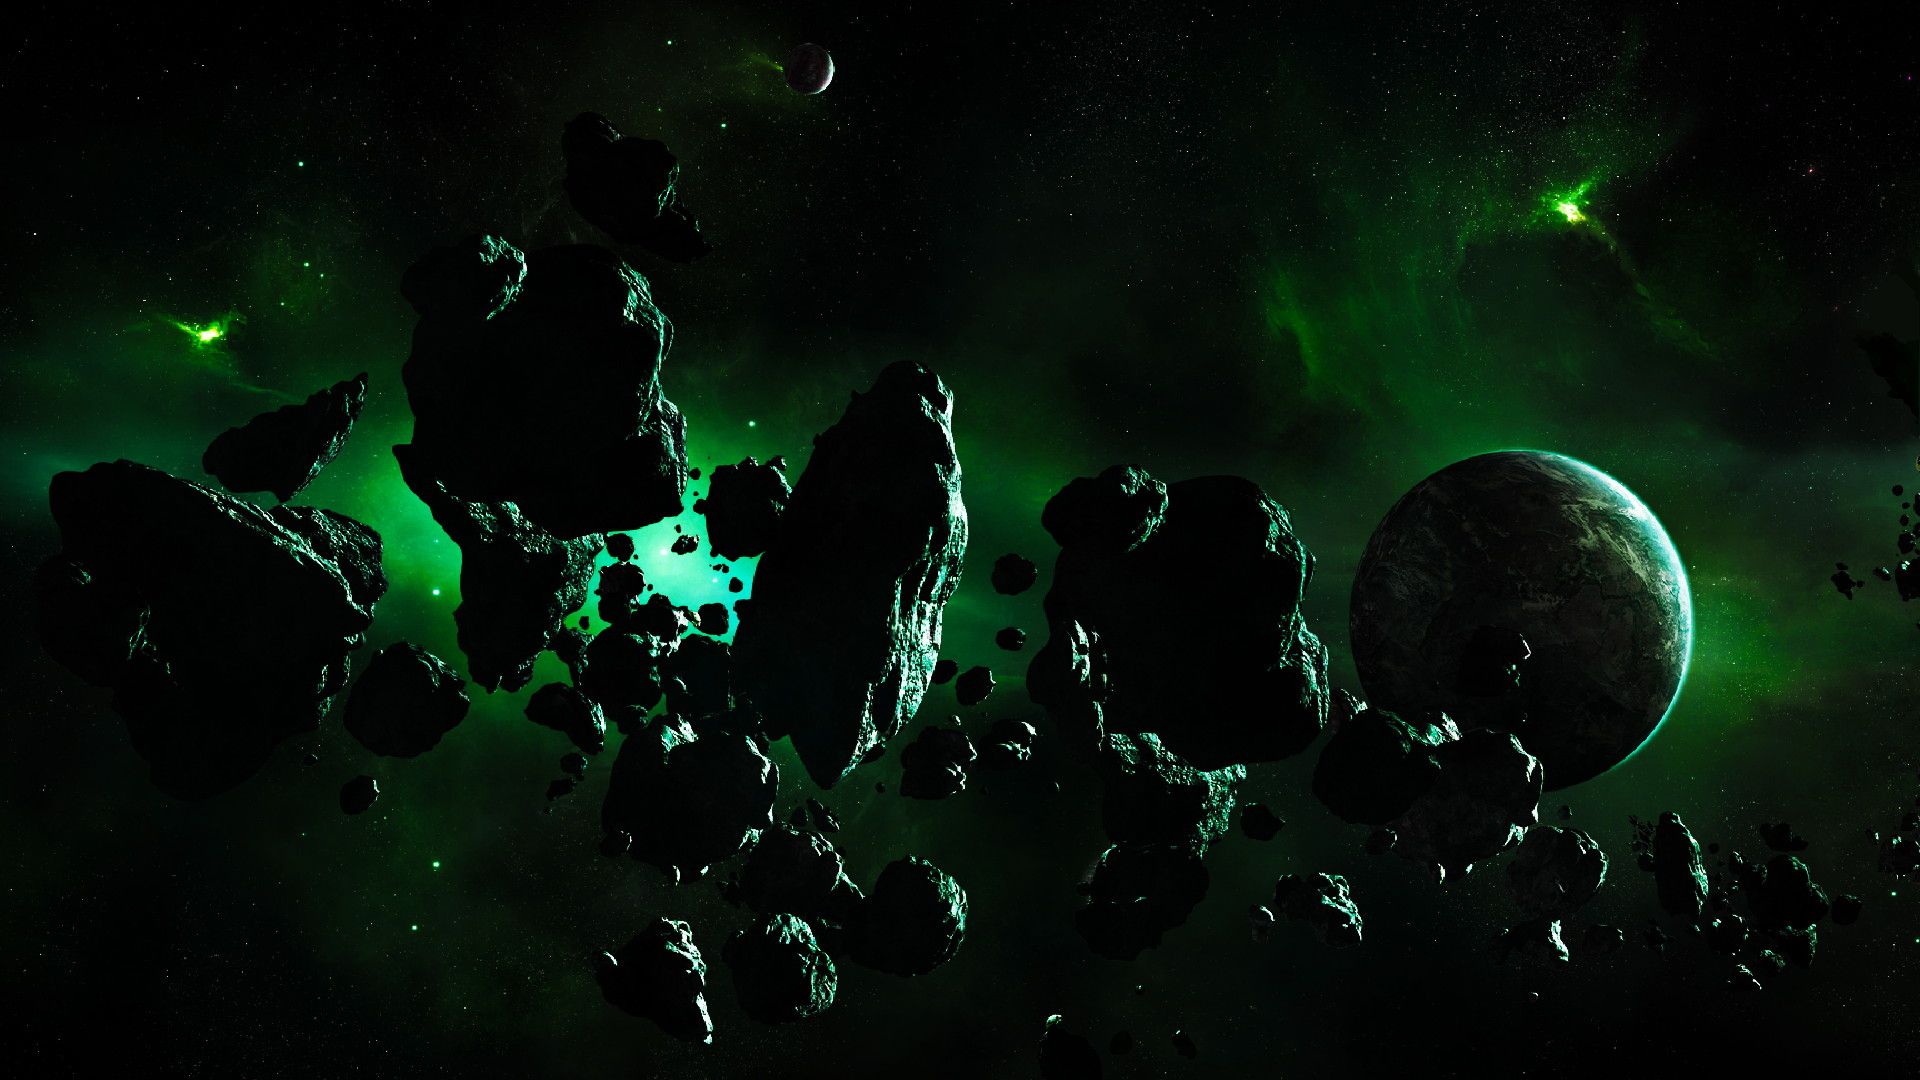 جدید ترین تصویر کمربند اصلی سیارک ها با تم سبز مشکی